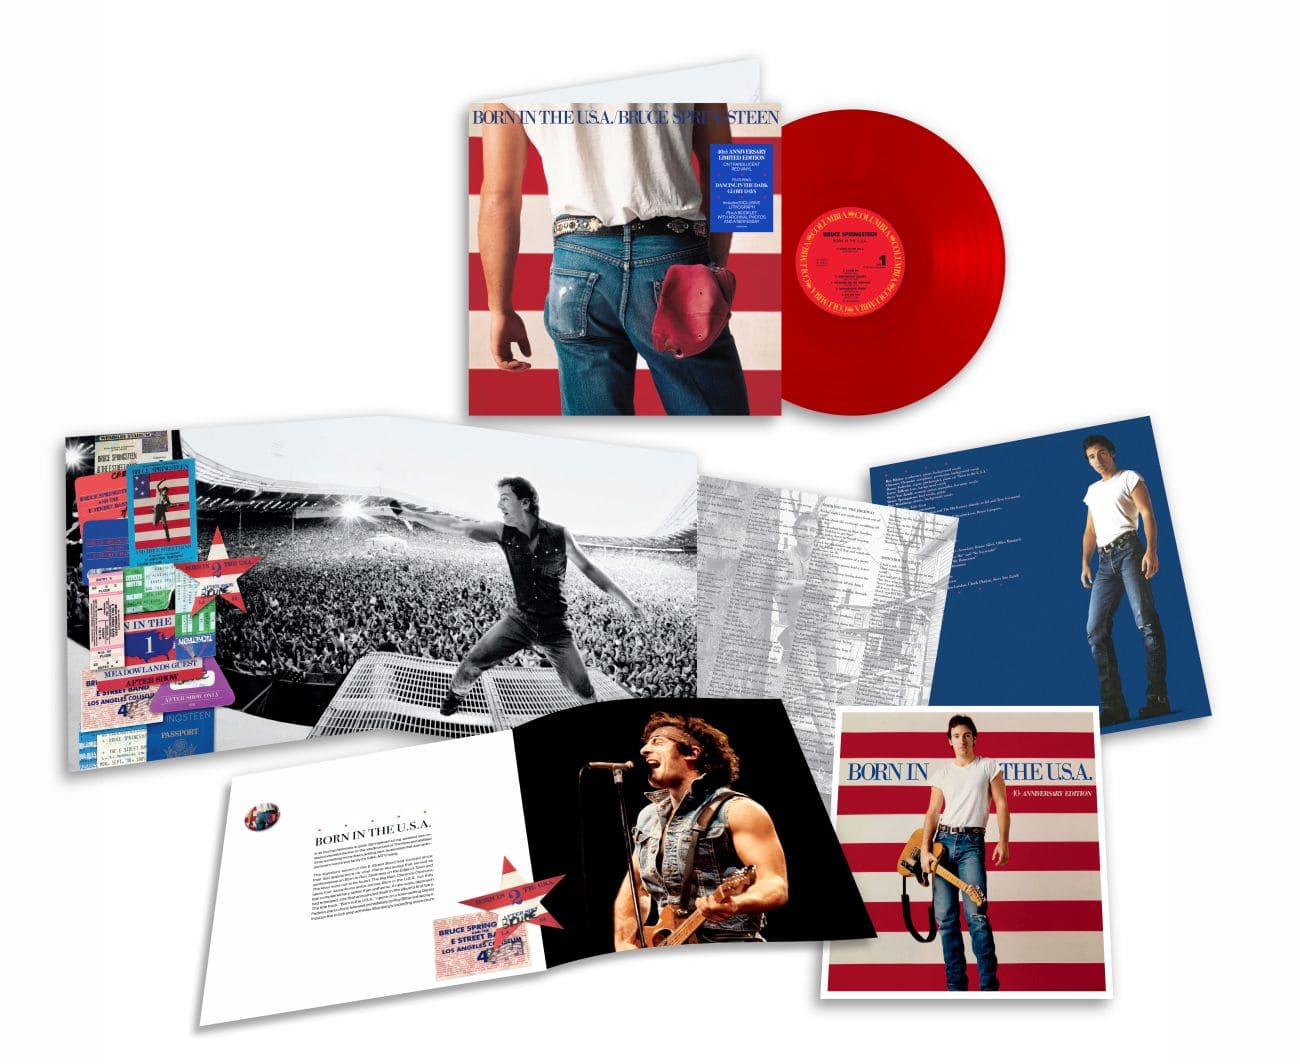 Bruce Springsteen: dal 14 giugno, in uscita Born In The U.S.A., il vinile, in edizione speciale, per il 40° anniversario dell'album capolavoro del Boss.